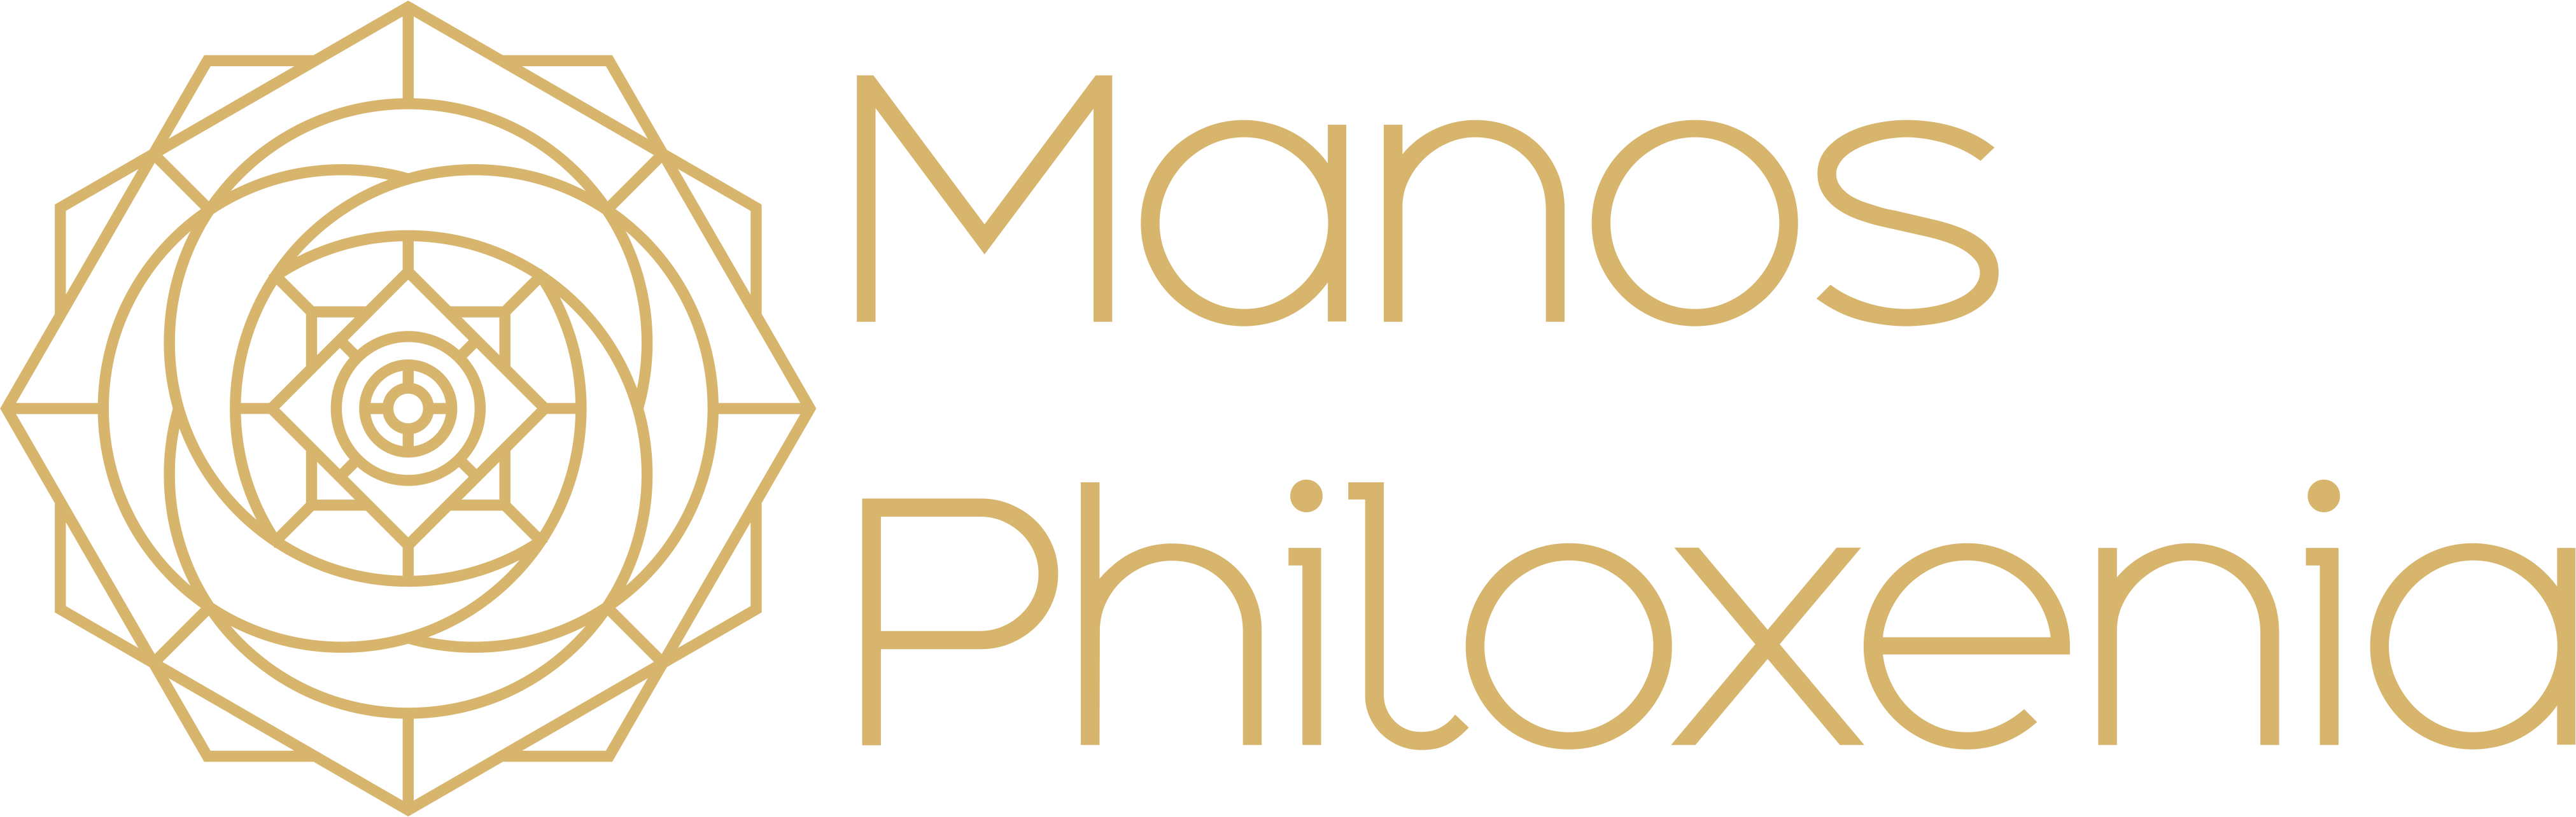 Manos Philoxenia